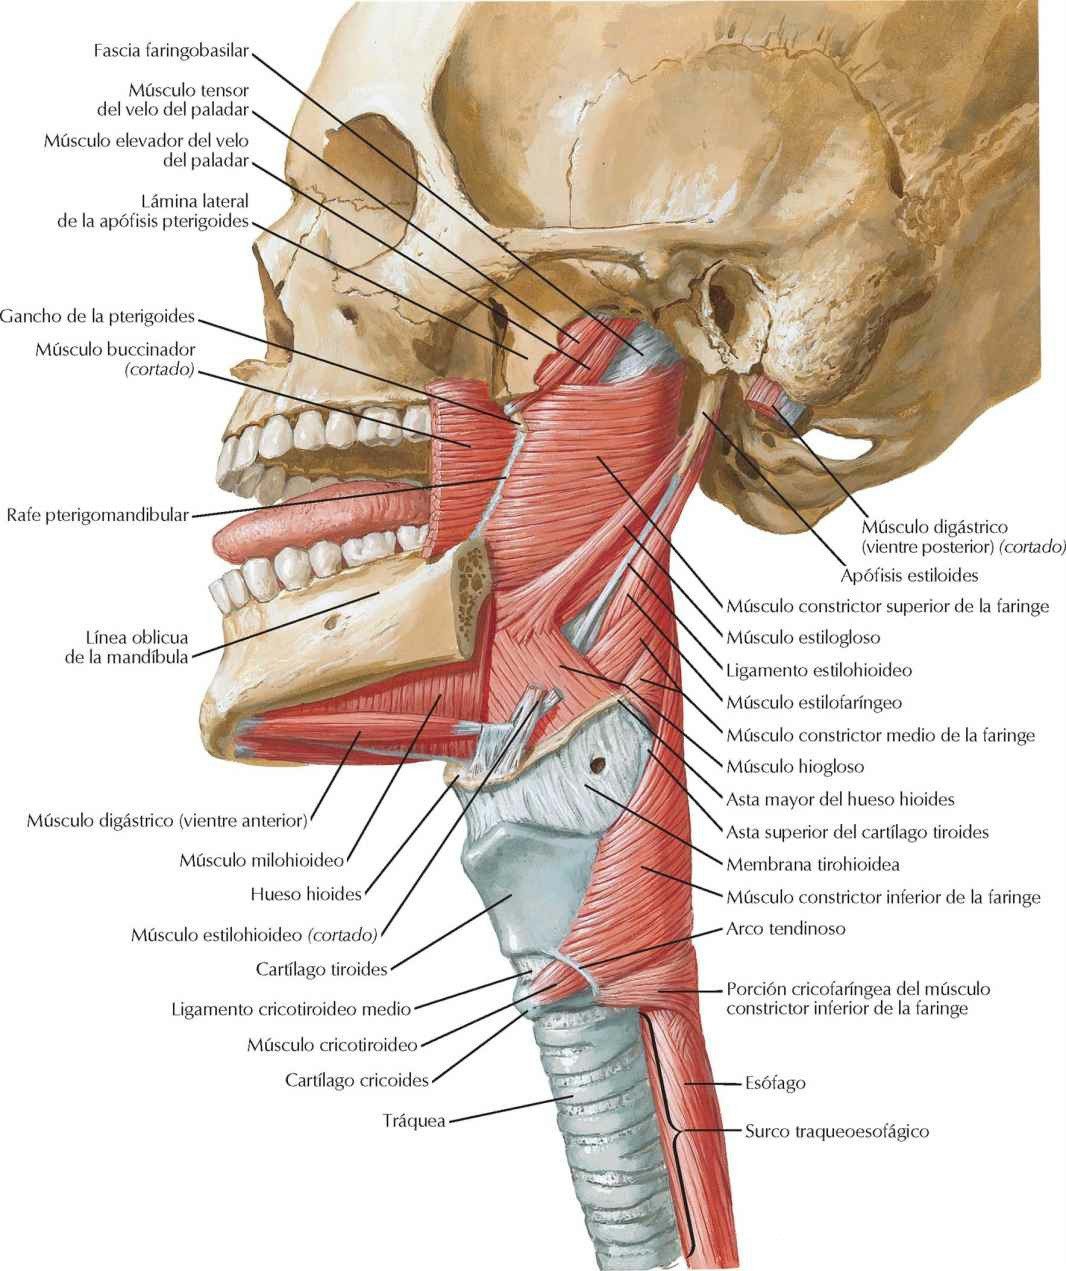 Músculos de la faringe: visión lateral.